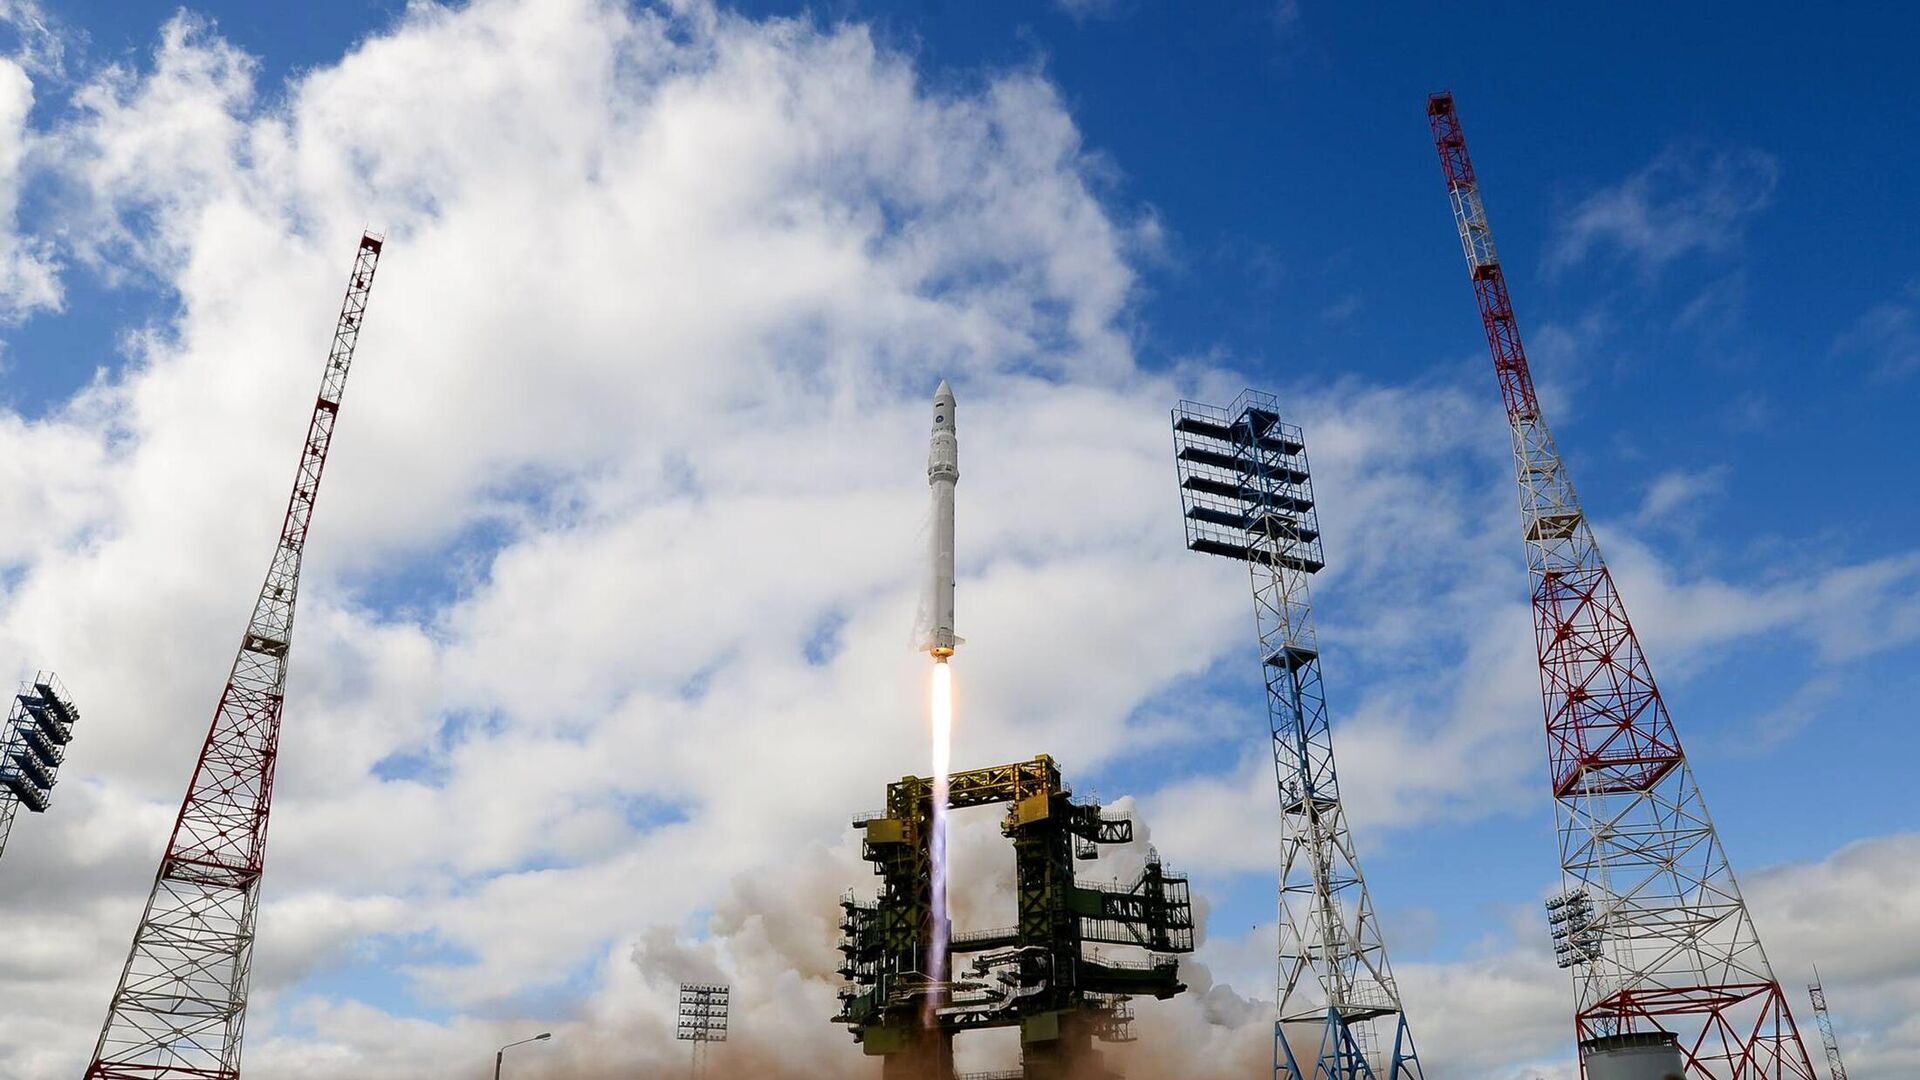 Ракета космического назначения легкого класса Ангара-1.2ПП во время старта на космодроме Плесецк0